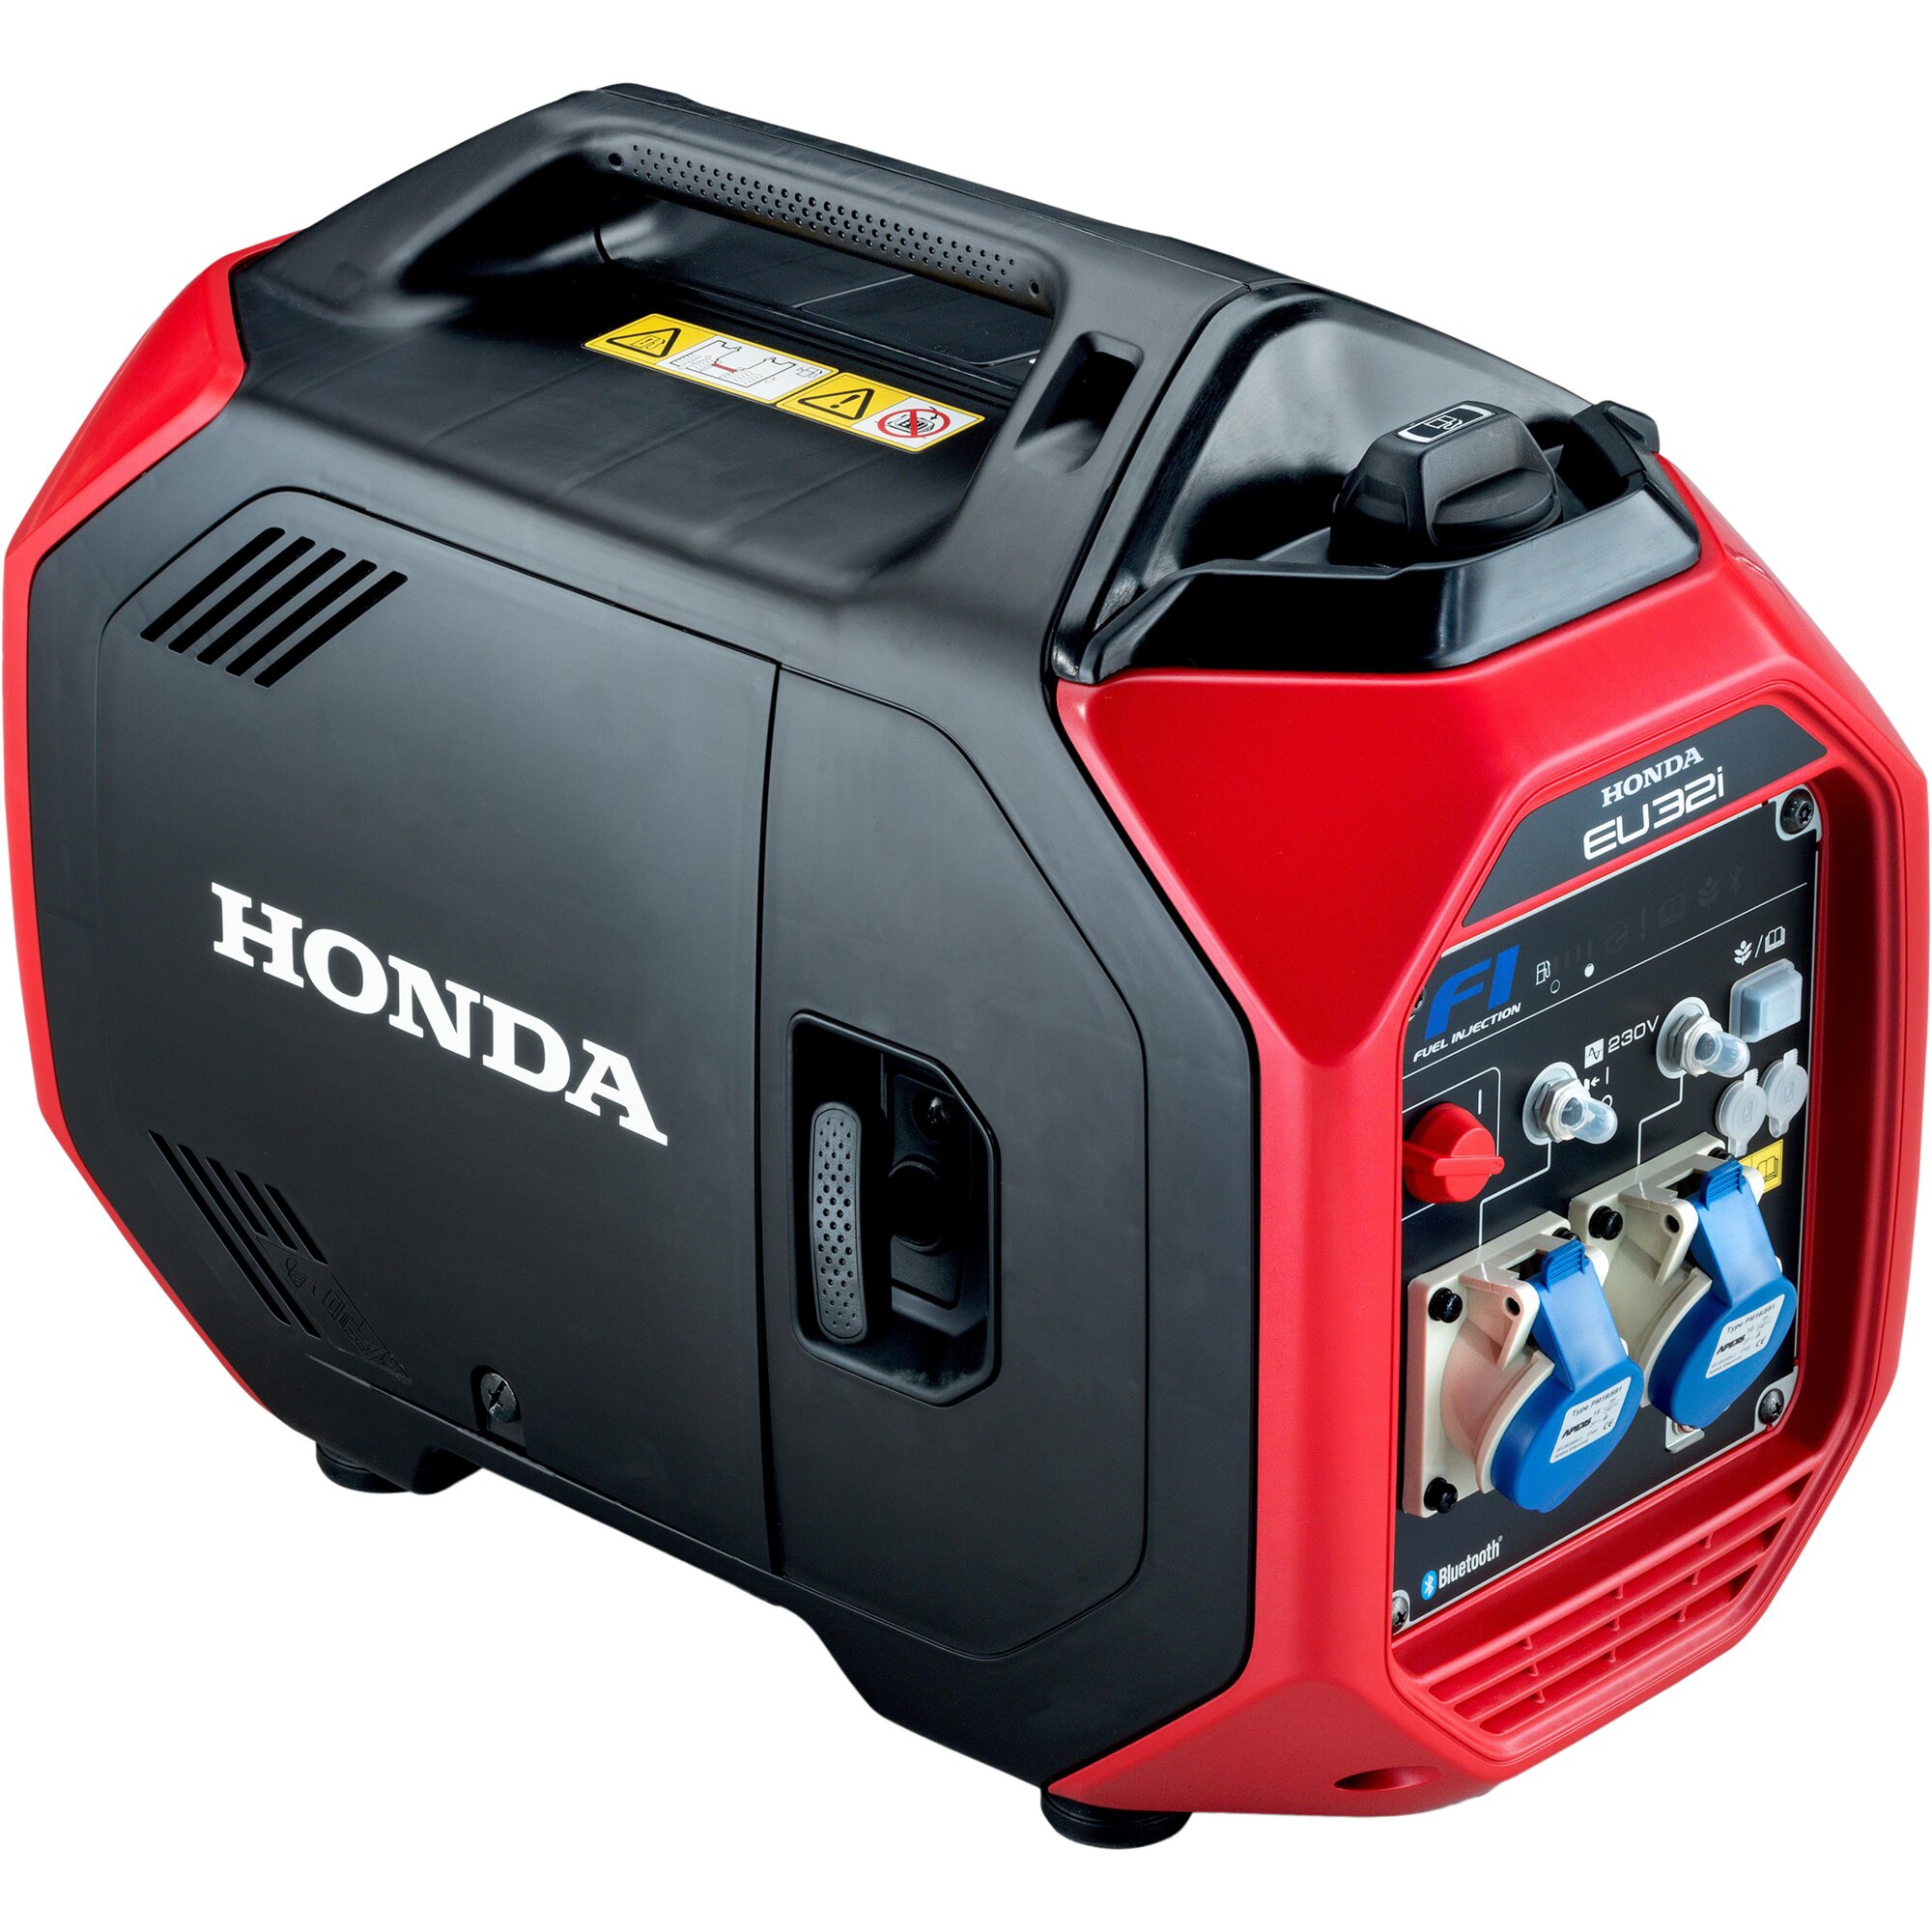 Stromerzeuger Honda, 2600 W, 130 cm³, EU 32i, 3200 W, 13,9 A, 73 dB  (A), Reversierstarter, 4,7 l